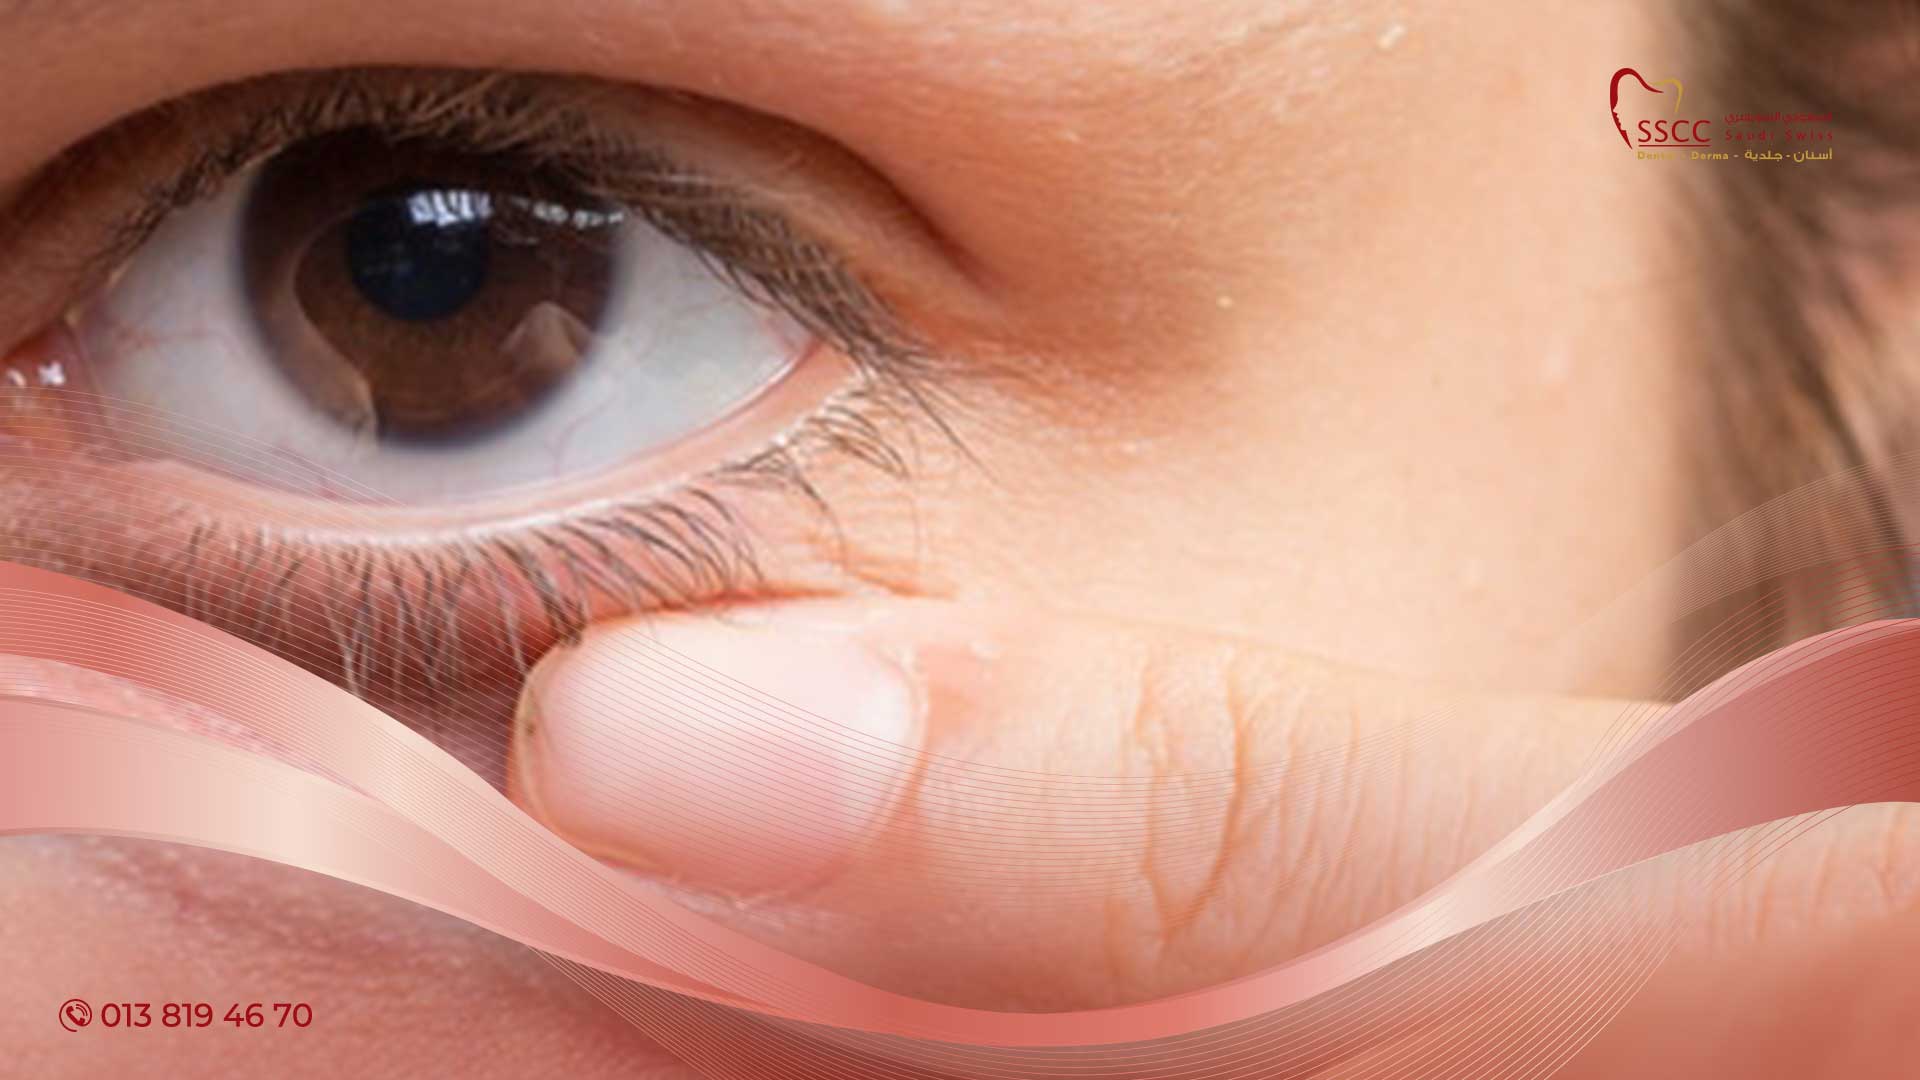 علاج تورم العين